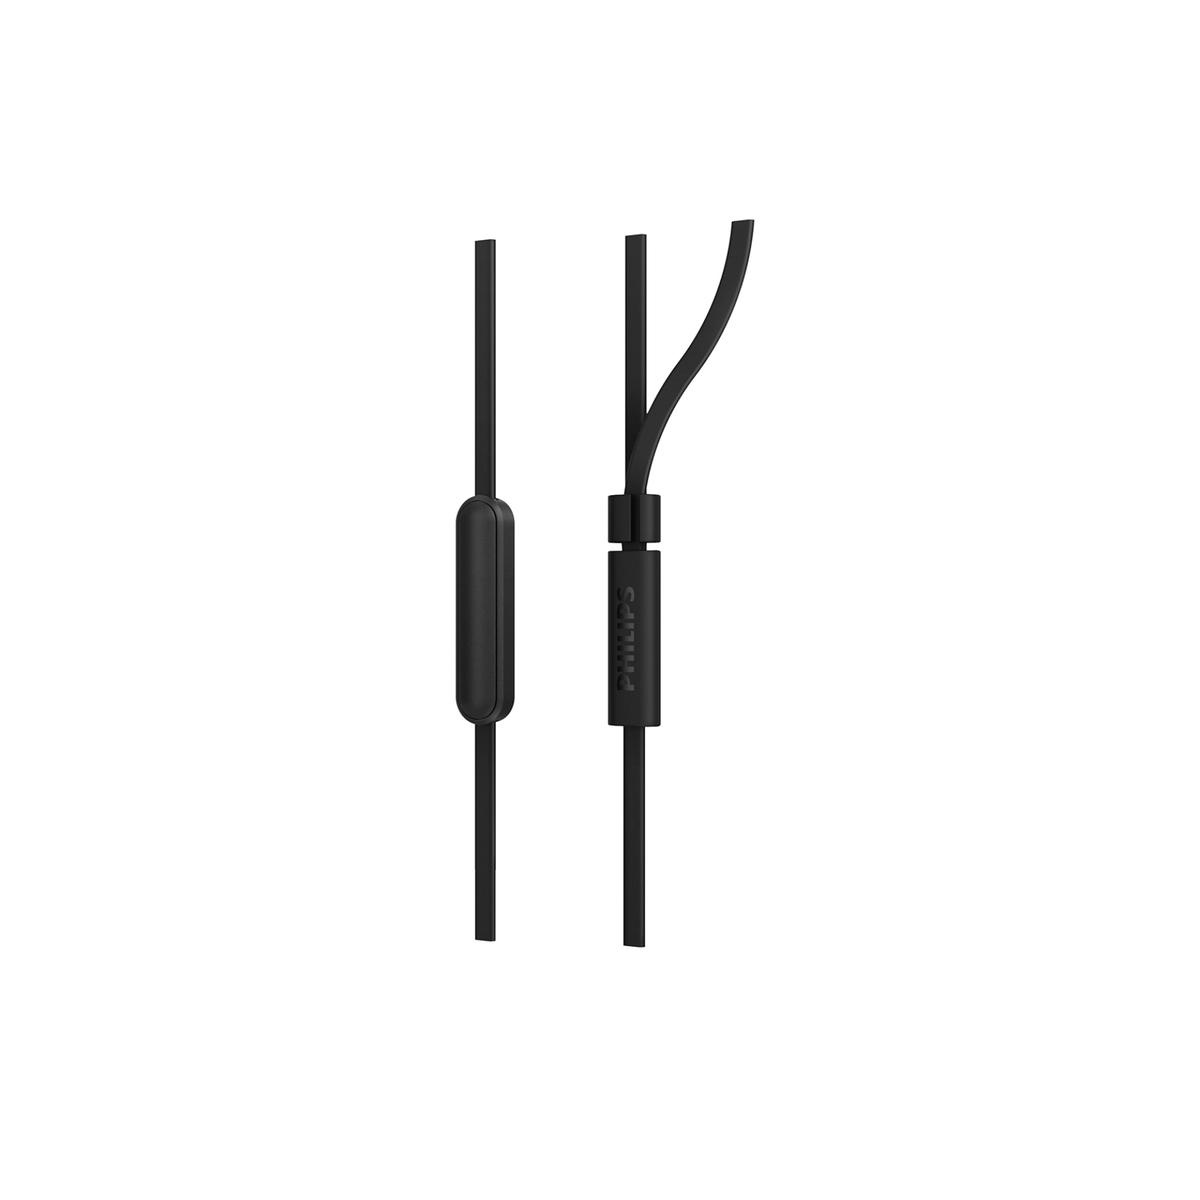 Philips In-ear Wired Headphone, Black, TAE1105BK/00